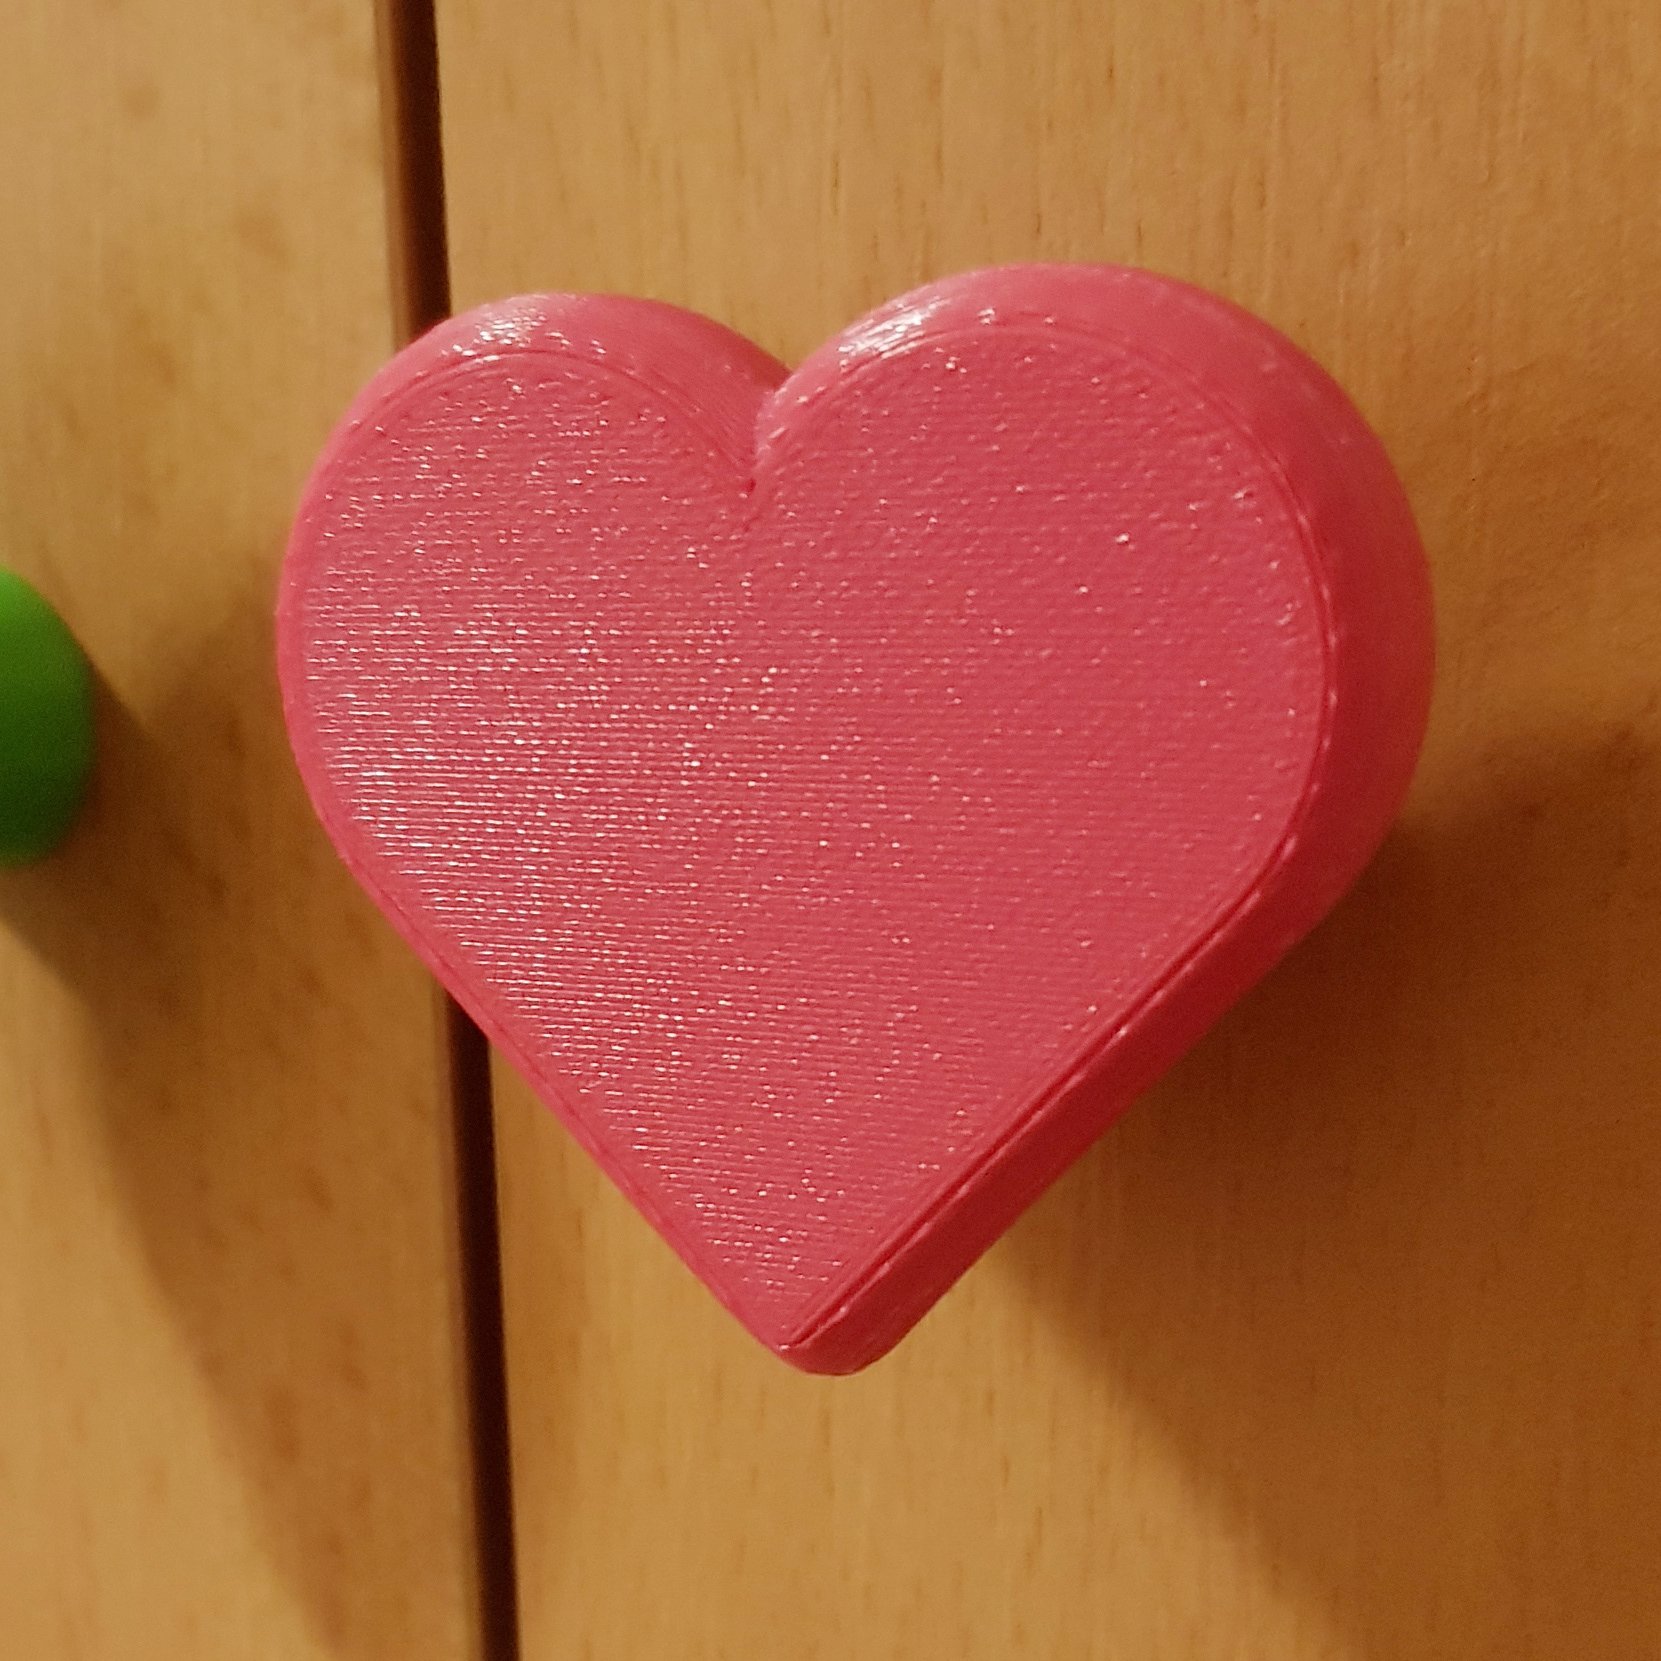 Heart cabinet/closet door knob